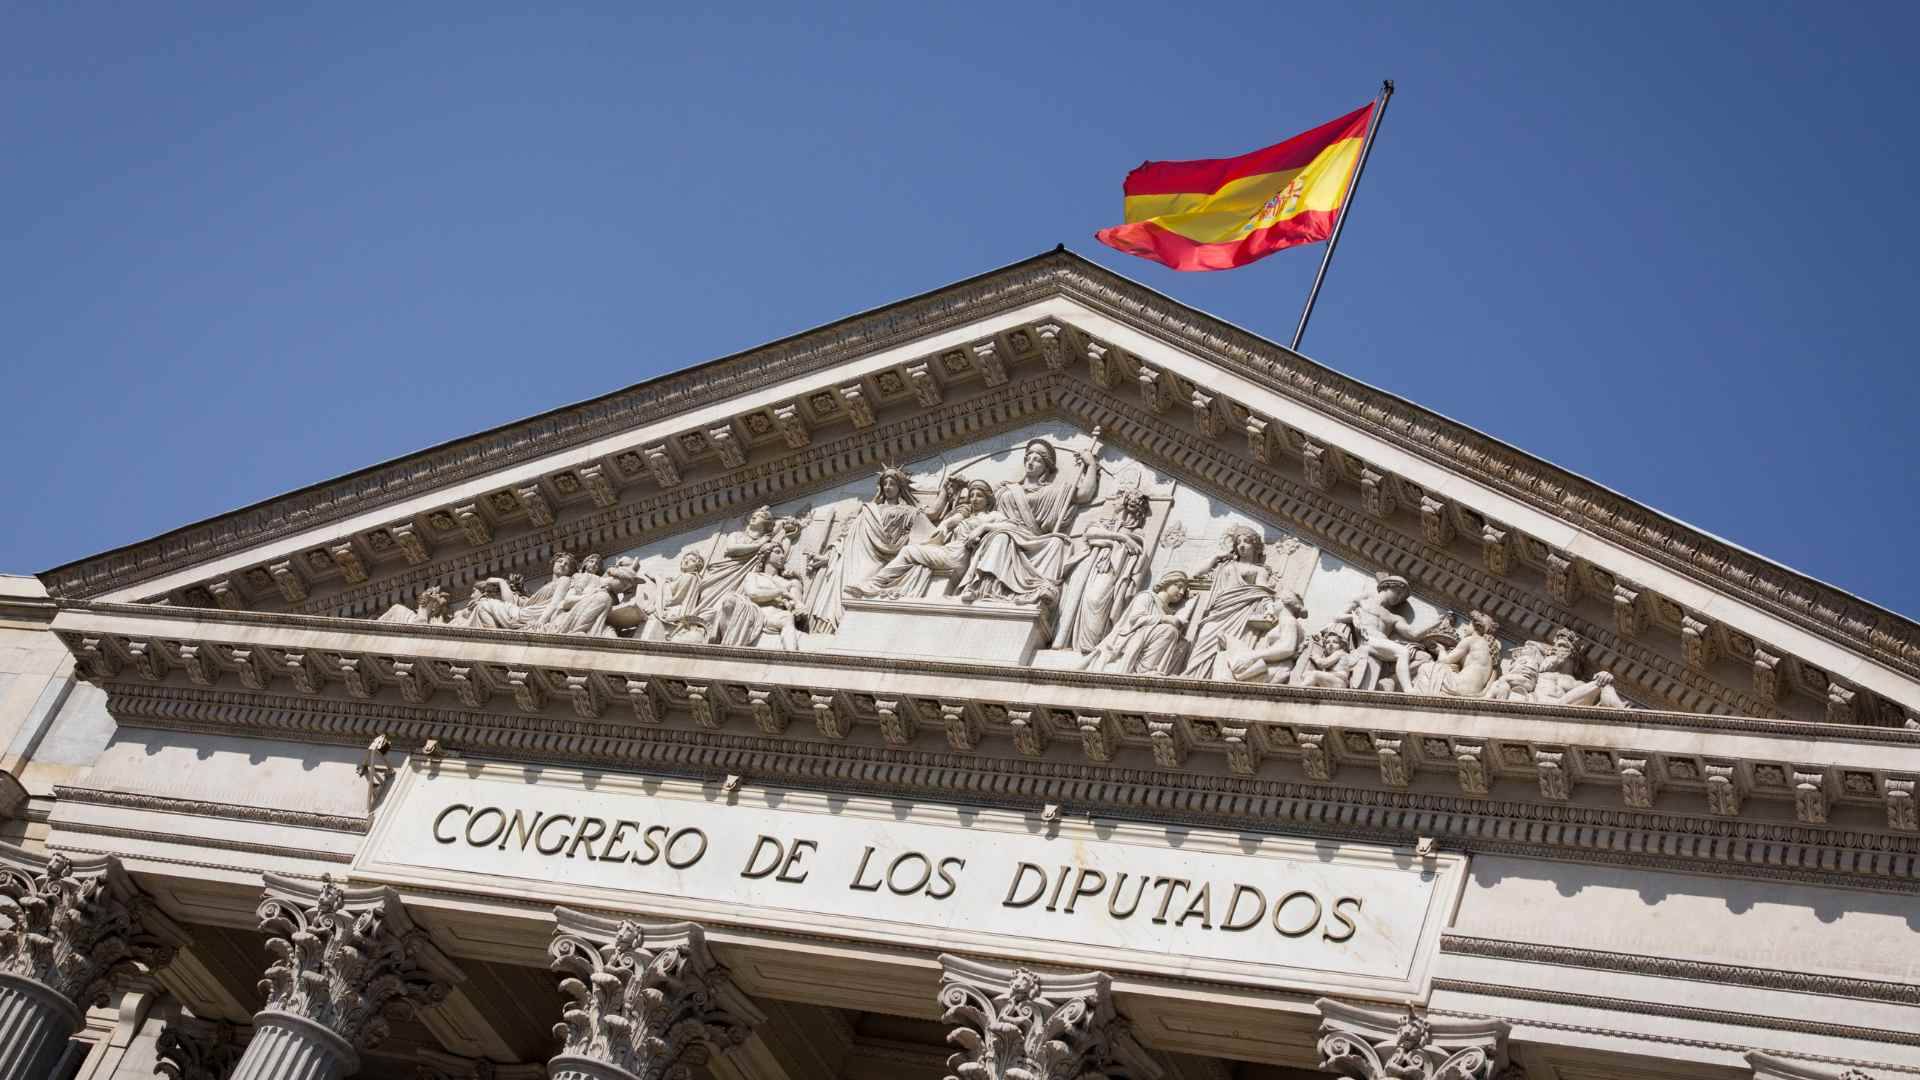 vientos-de-cambio-manifestacion-españa-congreso-siputados-pp-amnistia-manifestación